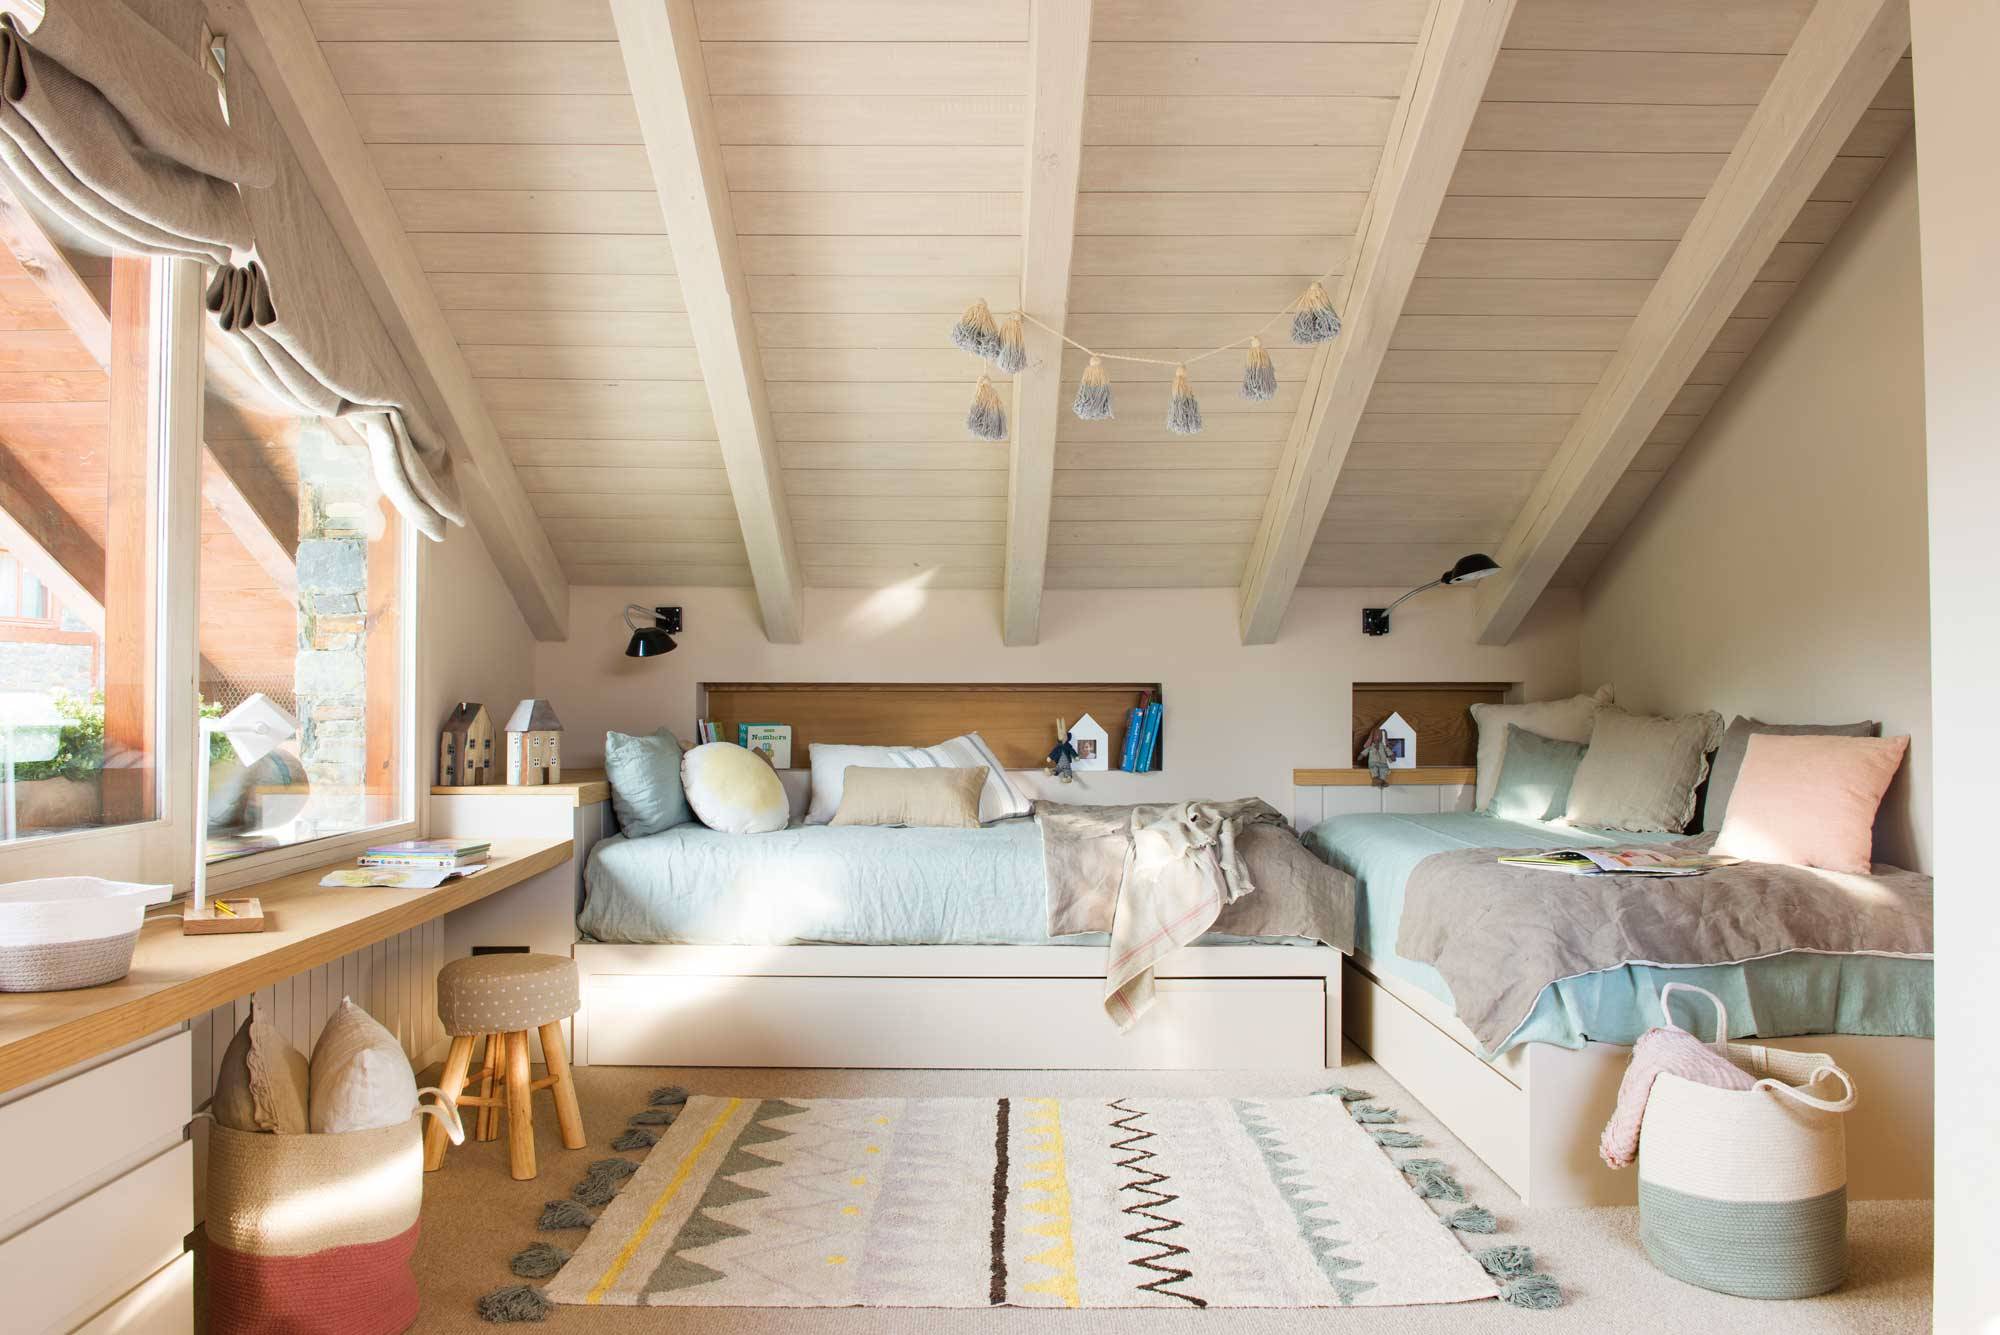 Dormitorio infantil con dos camas en madera y blanco.